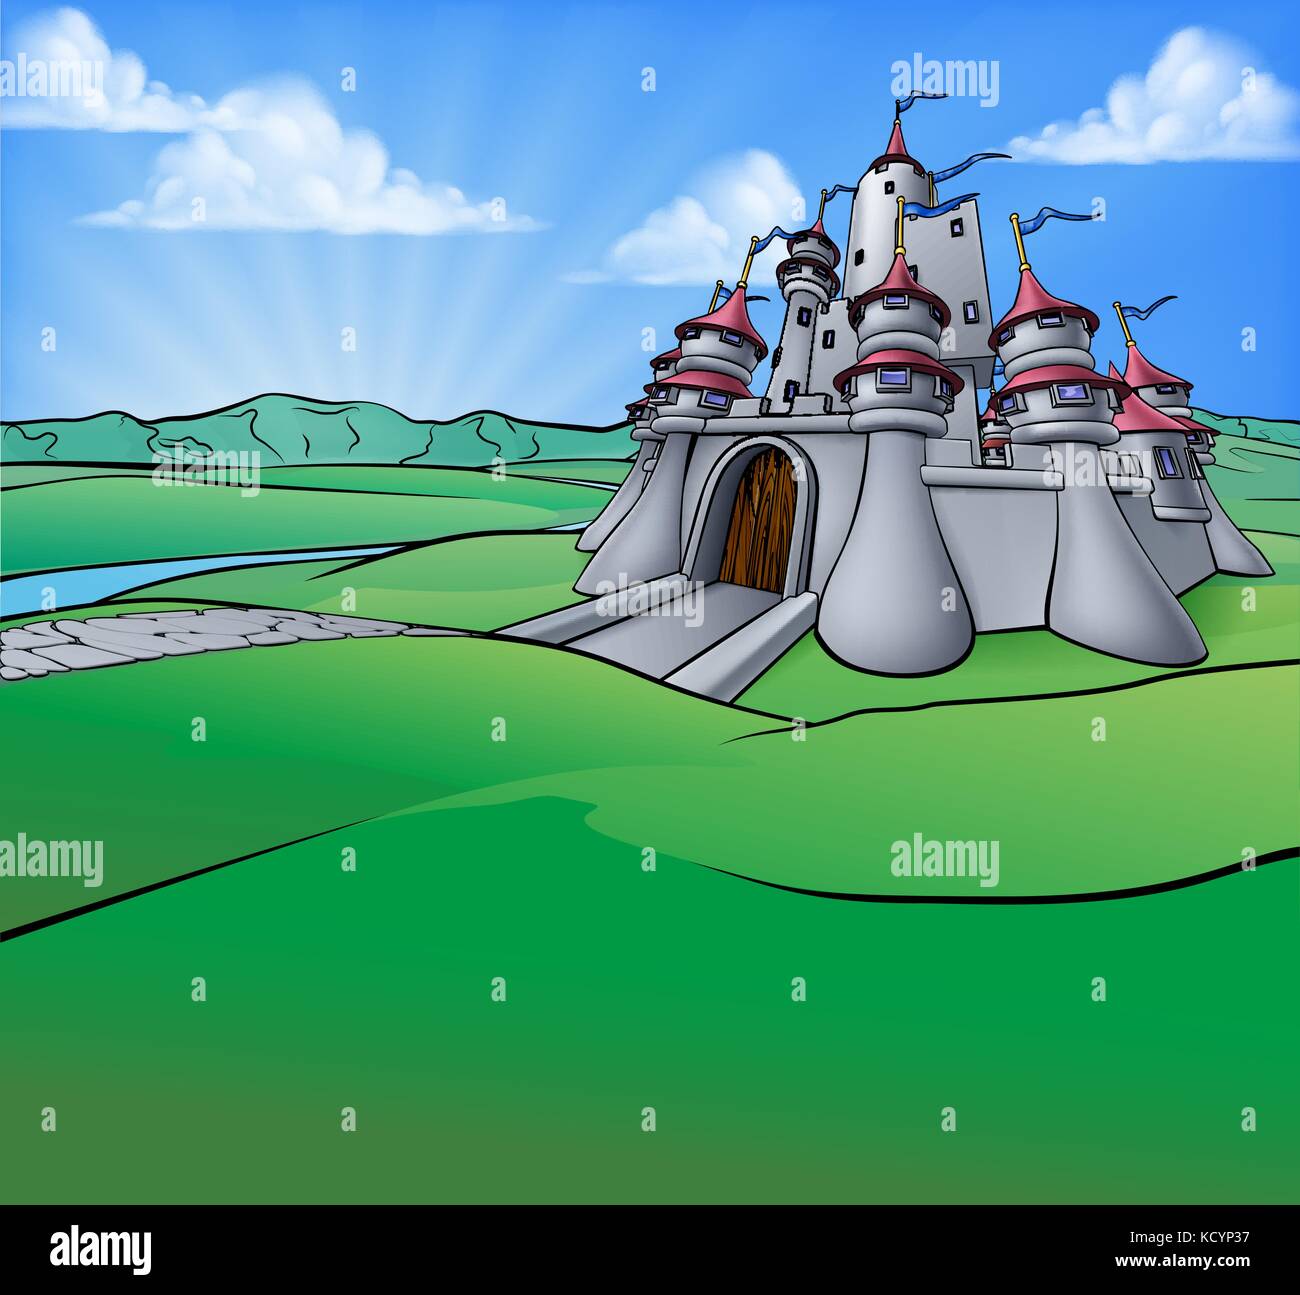 Arrière-plan de la scène de dessin animé du château Illustration de Vecteur